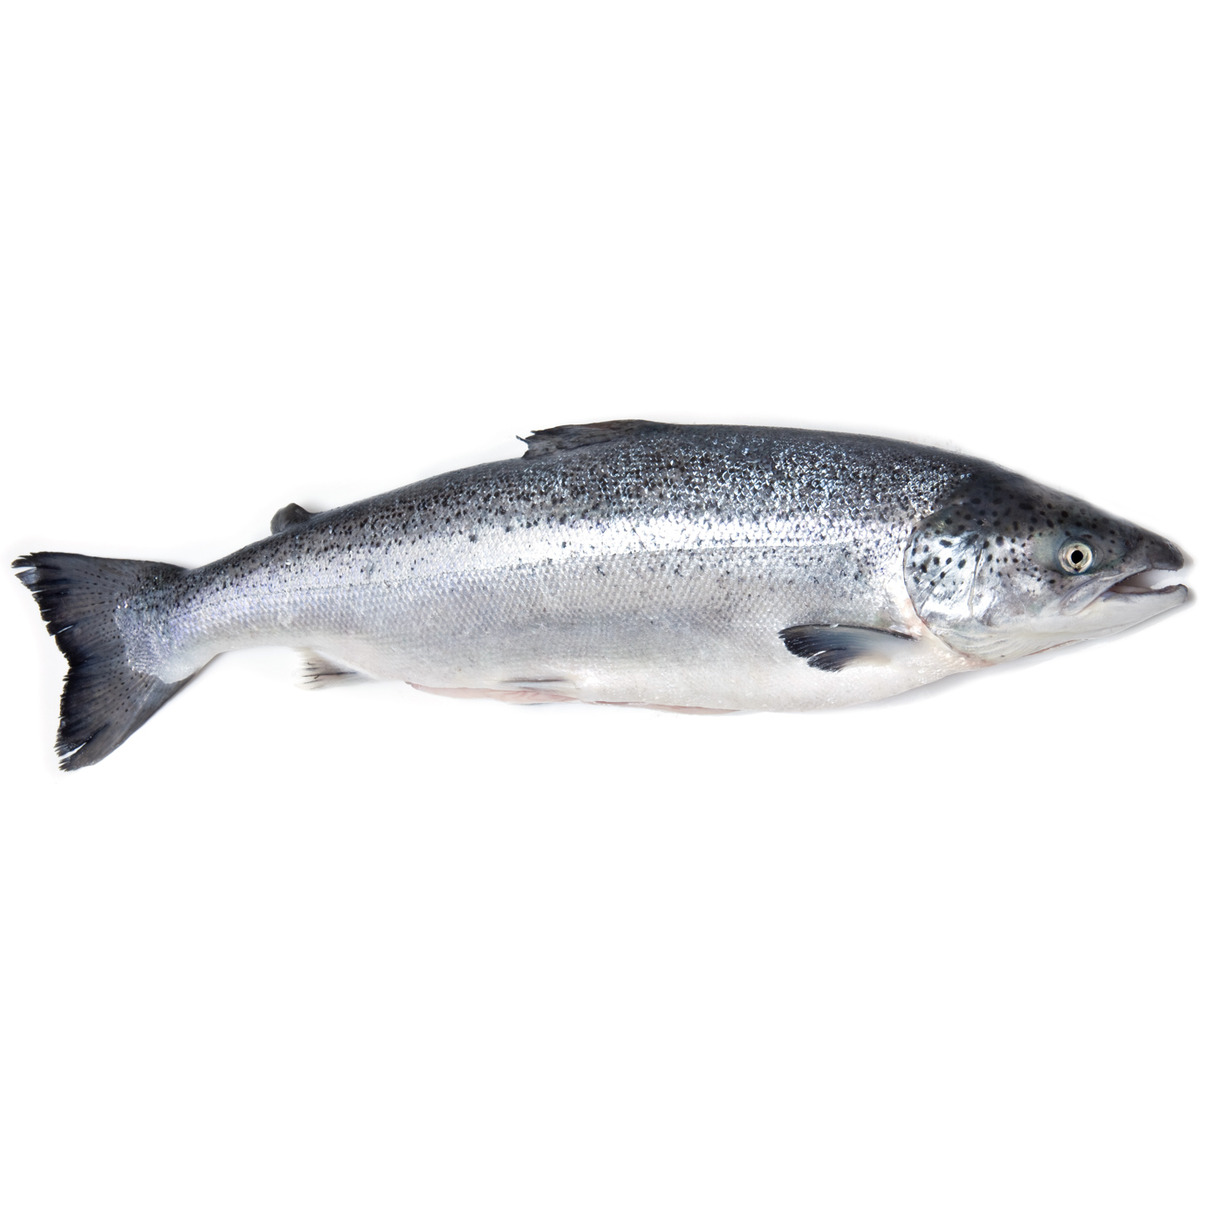 Атлантическая семга (Лосось)
Целая замороженная рыба вид Salmo salar размером от 2 до 3 килограммов позволяет получить вкусное, в меру сочное диетическое мясо.
Атлантическая Семга является одной из самых распространенных видов рыбы в мире. Она широко используется в различных блюдах, в том числе для суши, супов, роллов и для обжаривания на гриле. Замороженная семга хорошо сохраняет питательную ценность и может быть удобным источником белка для диетического питания.
Замороженная Семга содержит высокую концентрацию полезных жирных кислот, в том числе омега-3, которые полезны для сердечно-сосудистой системы и могут снижать риск развития сердечно-сосудистых заболеваний. Семга также является богатым источником протеина, который необходим для строительства и ремонта тканей человеческого тела. Протеин, который содержится в семге, может быть использован организмом для синтеза гормонов. Поэтому употребление семги в рационе может быть полезным для поддержания нормального уровня гормонов в человеческом теле.
При заказе рыбы укажите, какой вид нарезки вам необходим. Так как эта рыба семга замороженная, есть два вида поставки - целая рыба и нарезанная на стейки. По данной цене предлагается целая рыба, в комплекте с головой и суповым набором.
Хранить в морозильной камере.